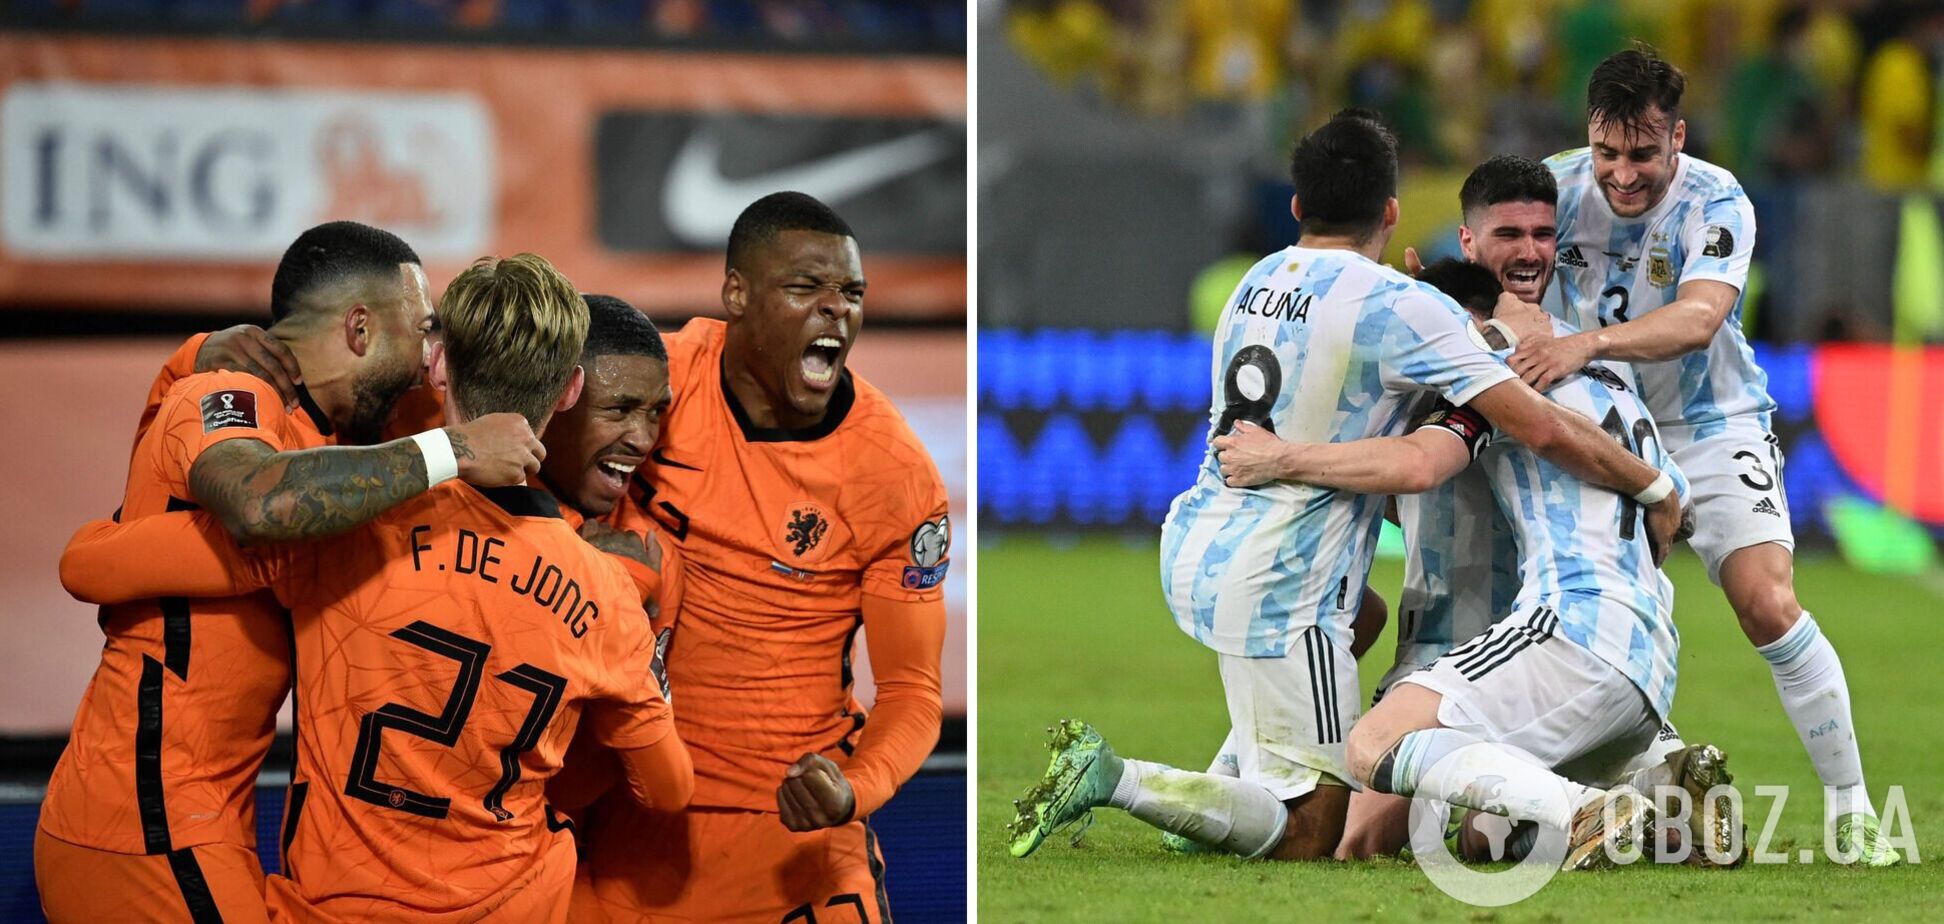 Аргентина проходит Нидерланды! Результат и хронология 1/4 финала ЧМ-2022